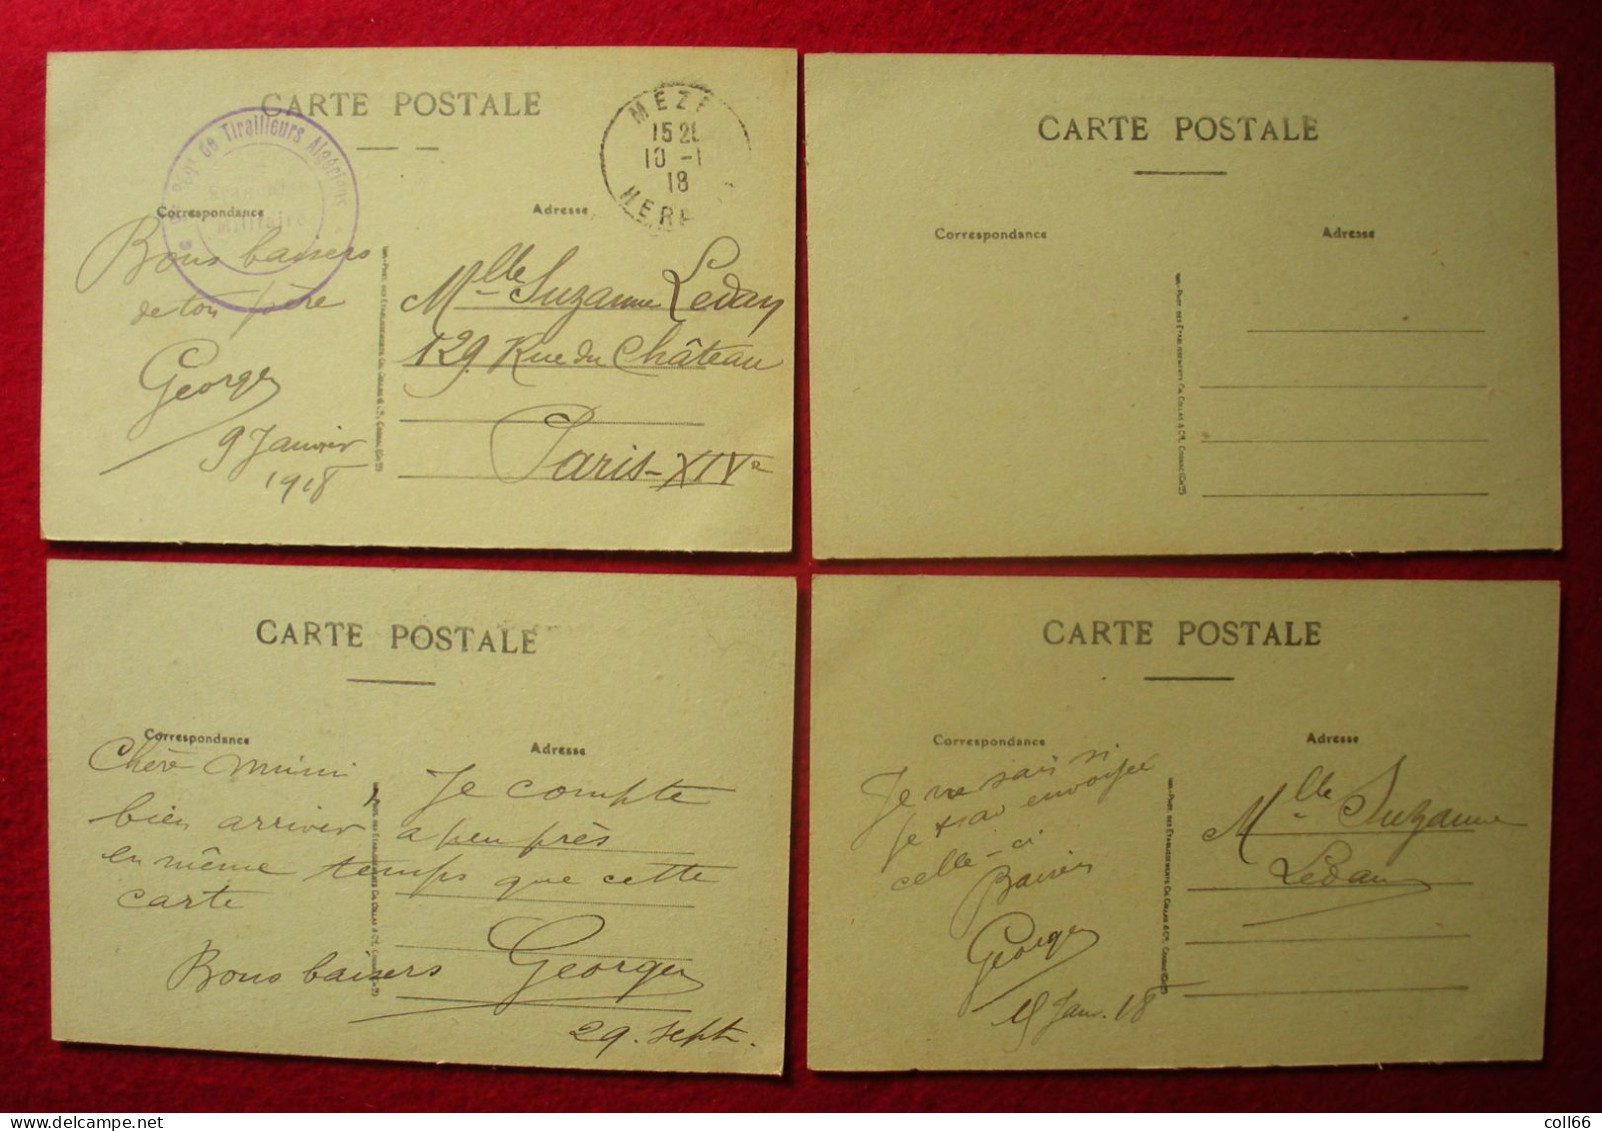 34 Mèze 1918-19 Lot de 15 cartes à saisir dont très animée éditeur BD  Ets Collas Cognac dos scanné